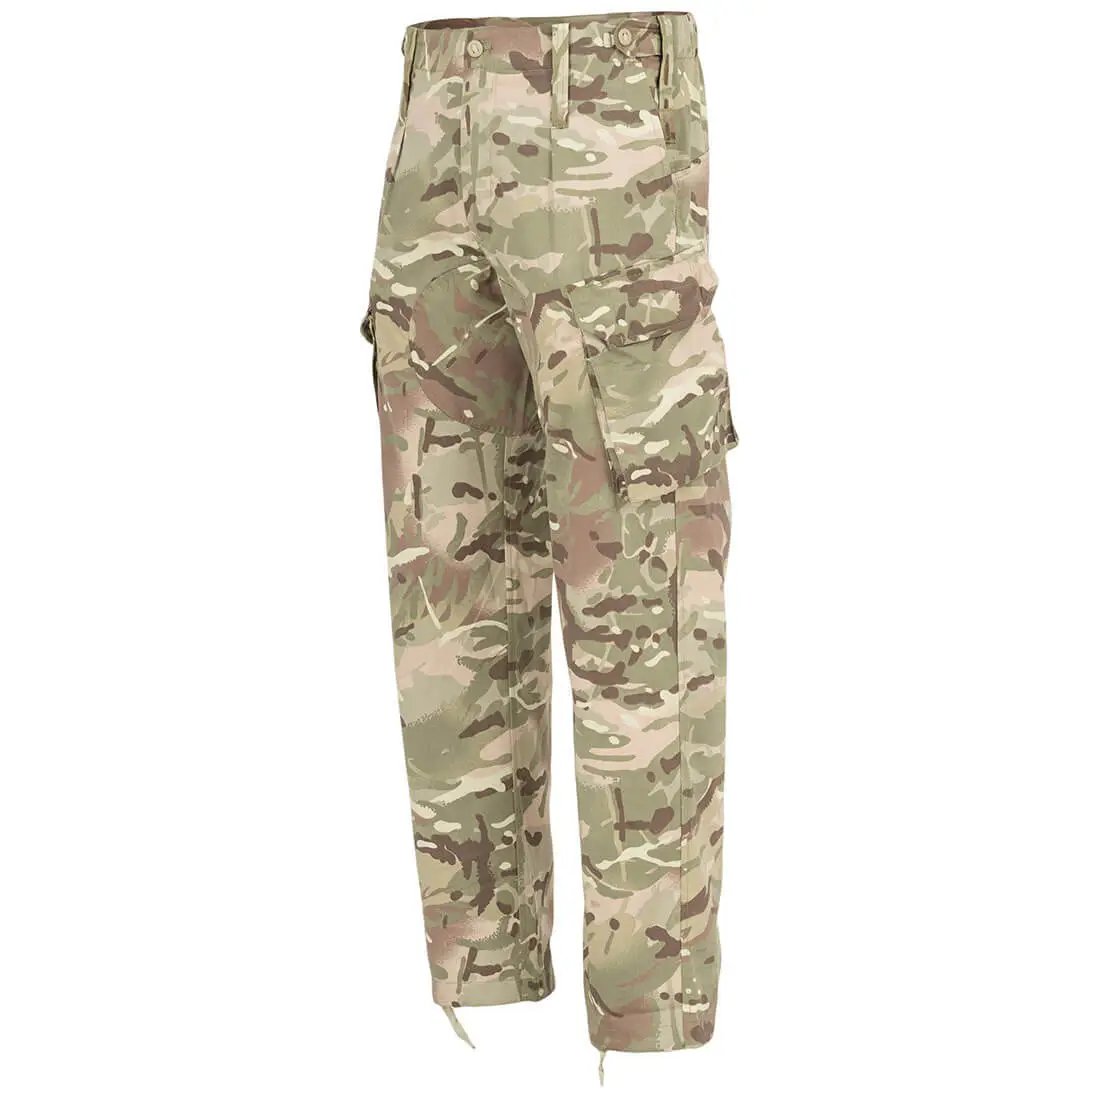 Highlander Delta Combat Military Trouser HMTC - John Bull Clothing